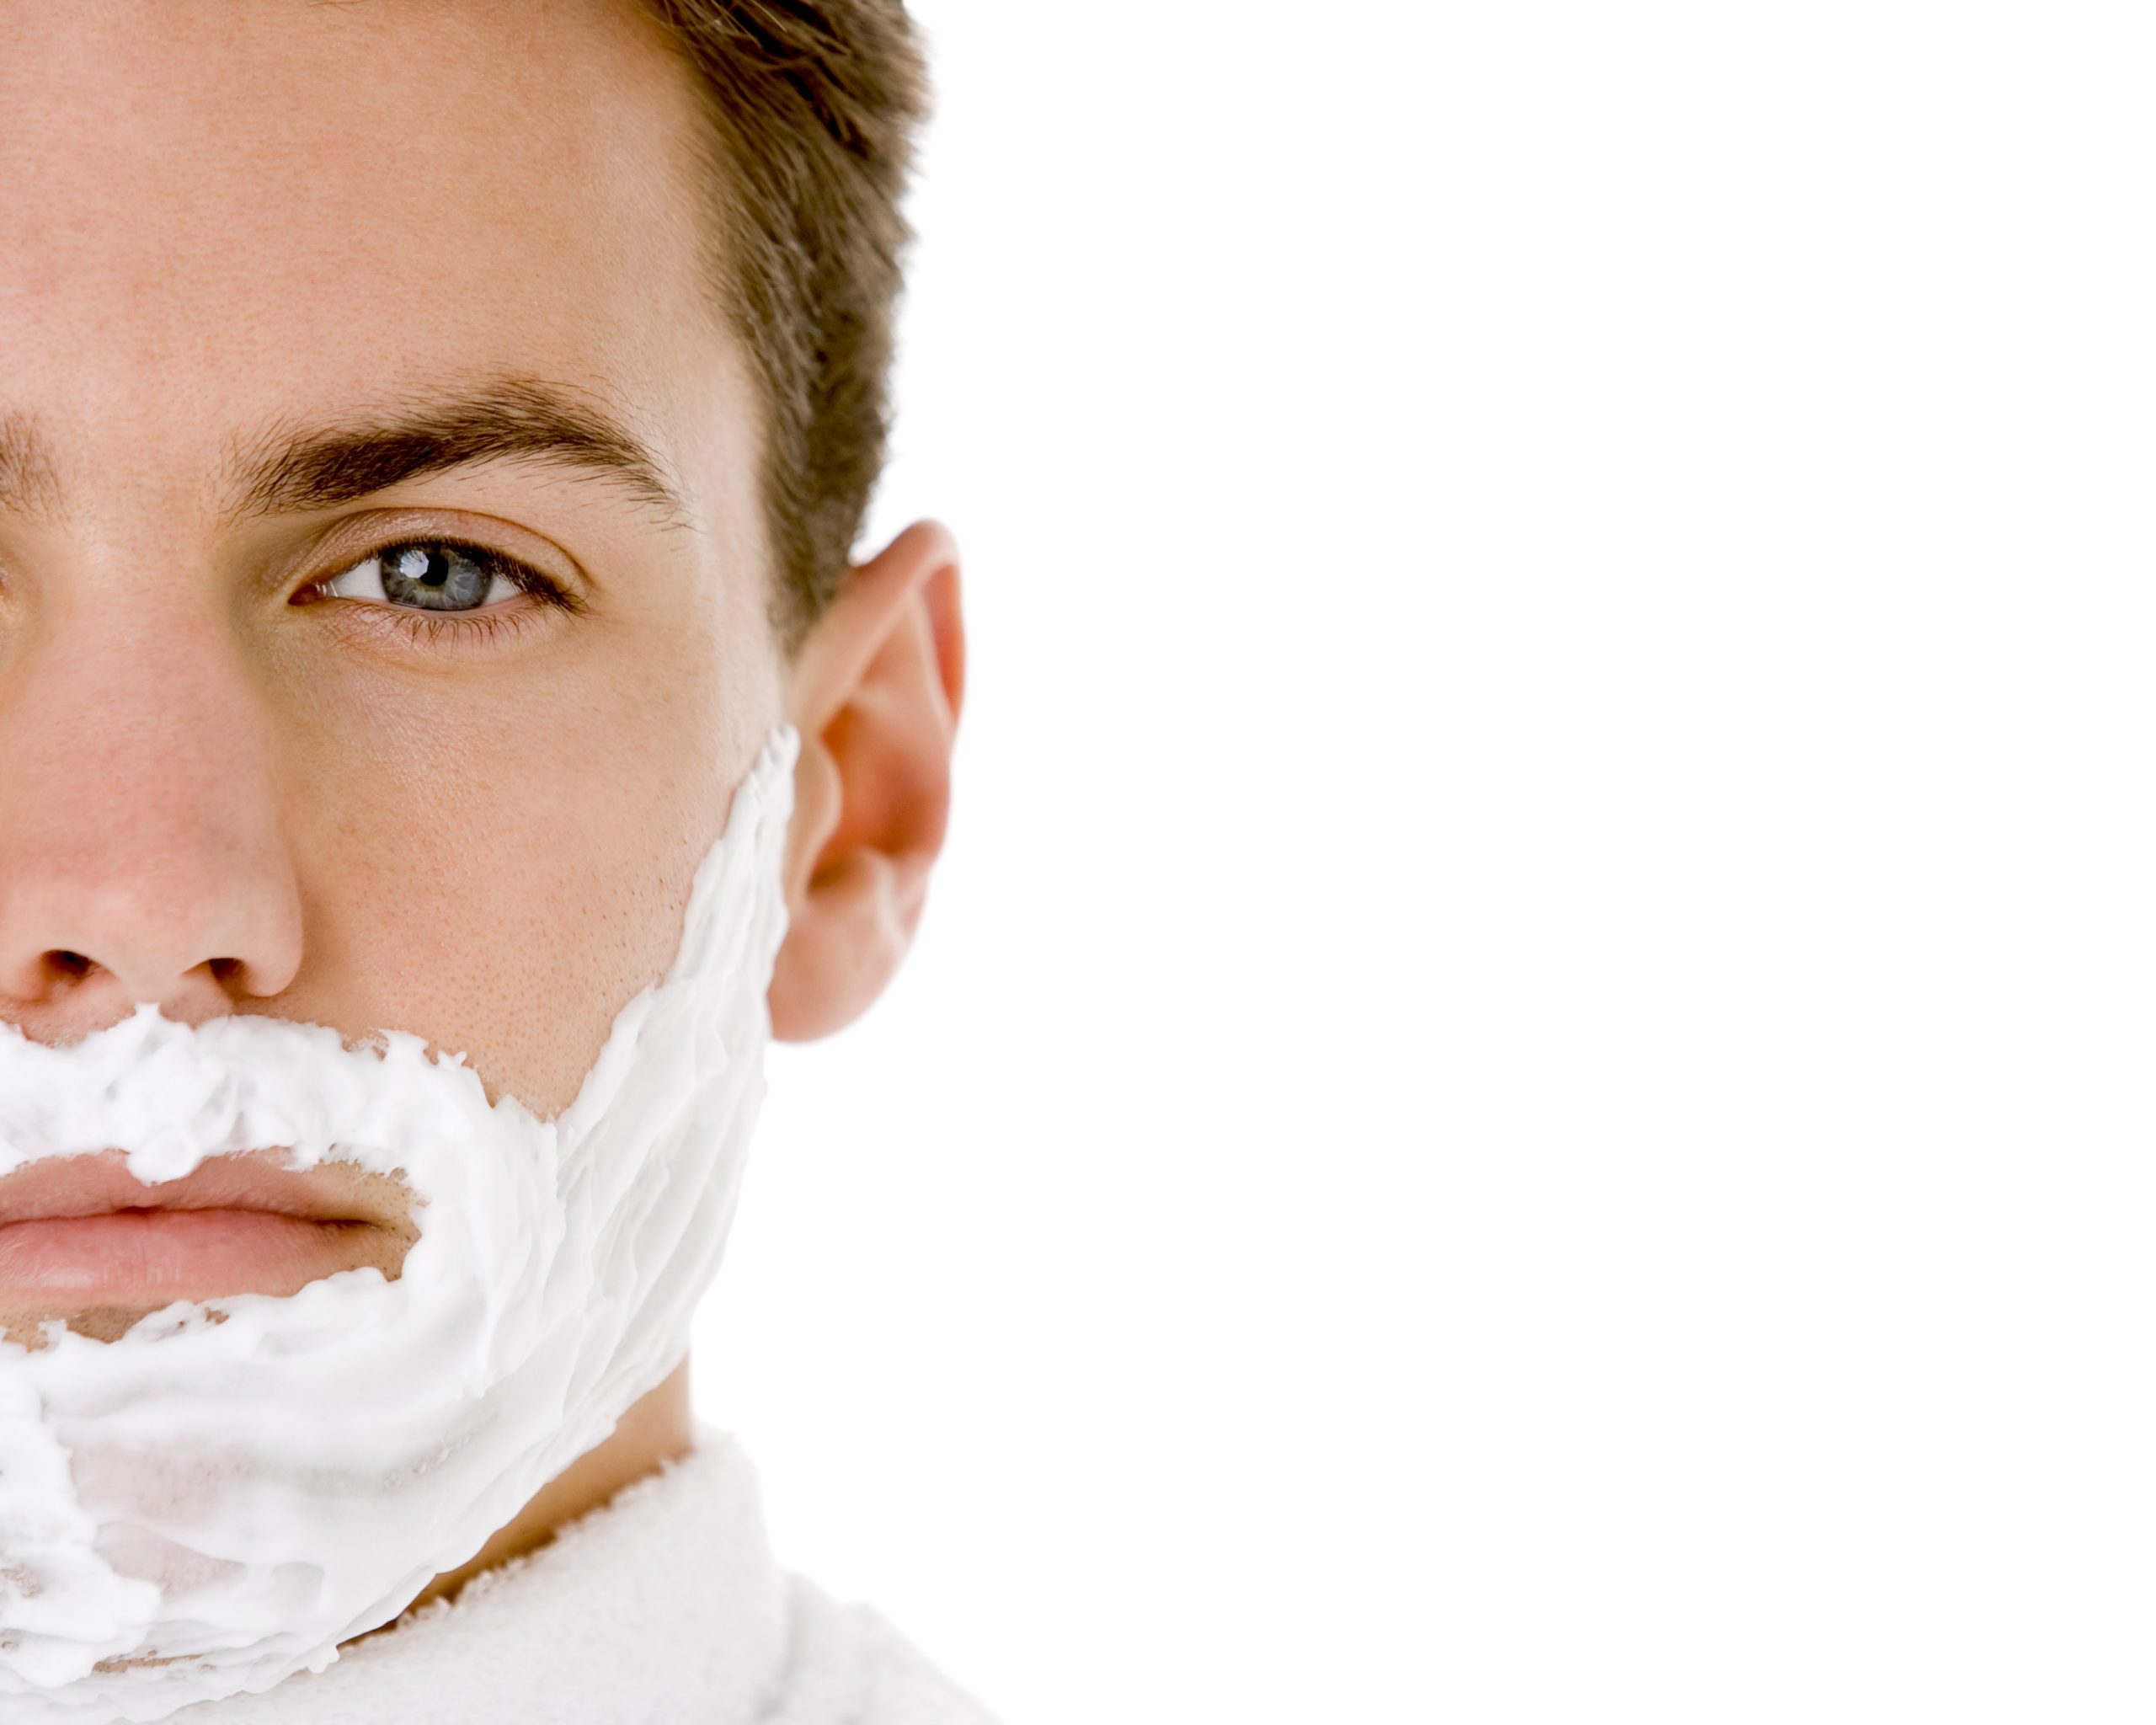 shaving cream for sensitive skin